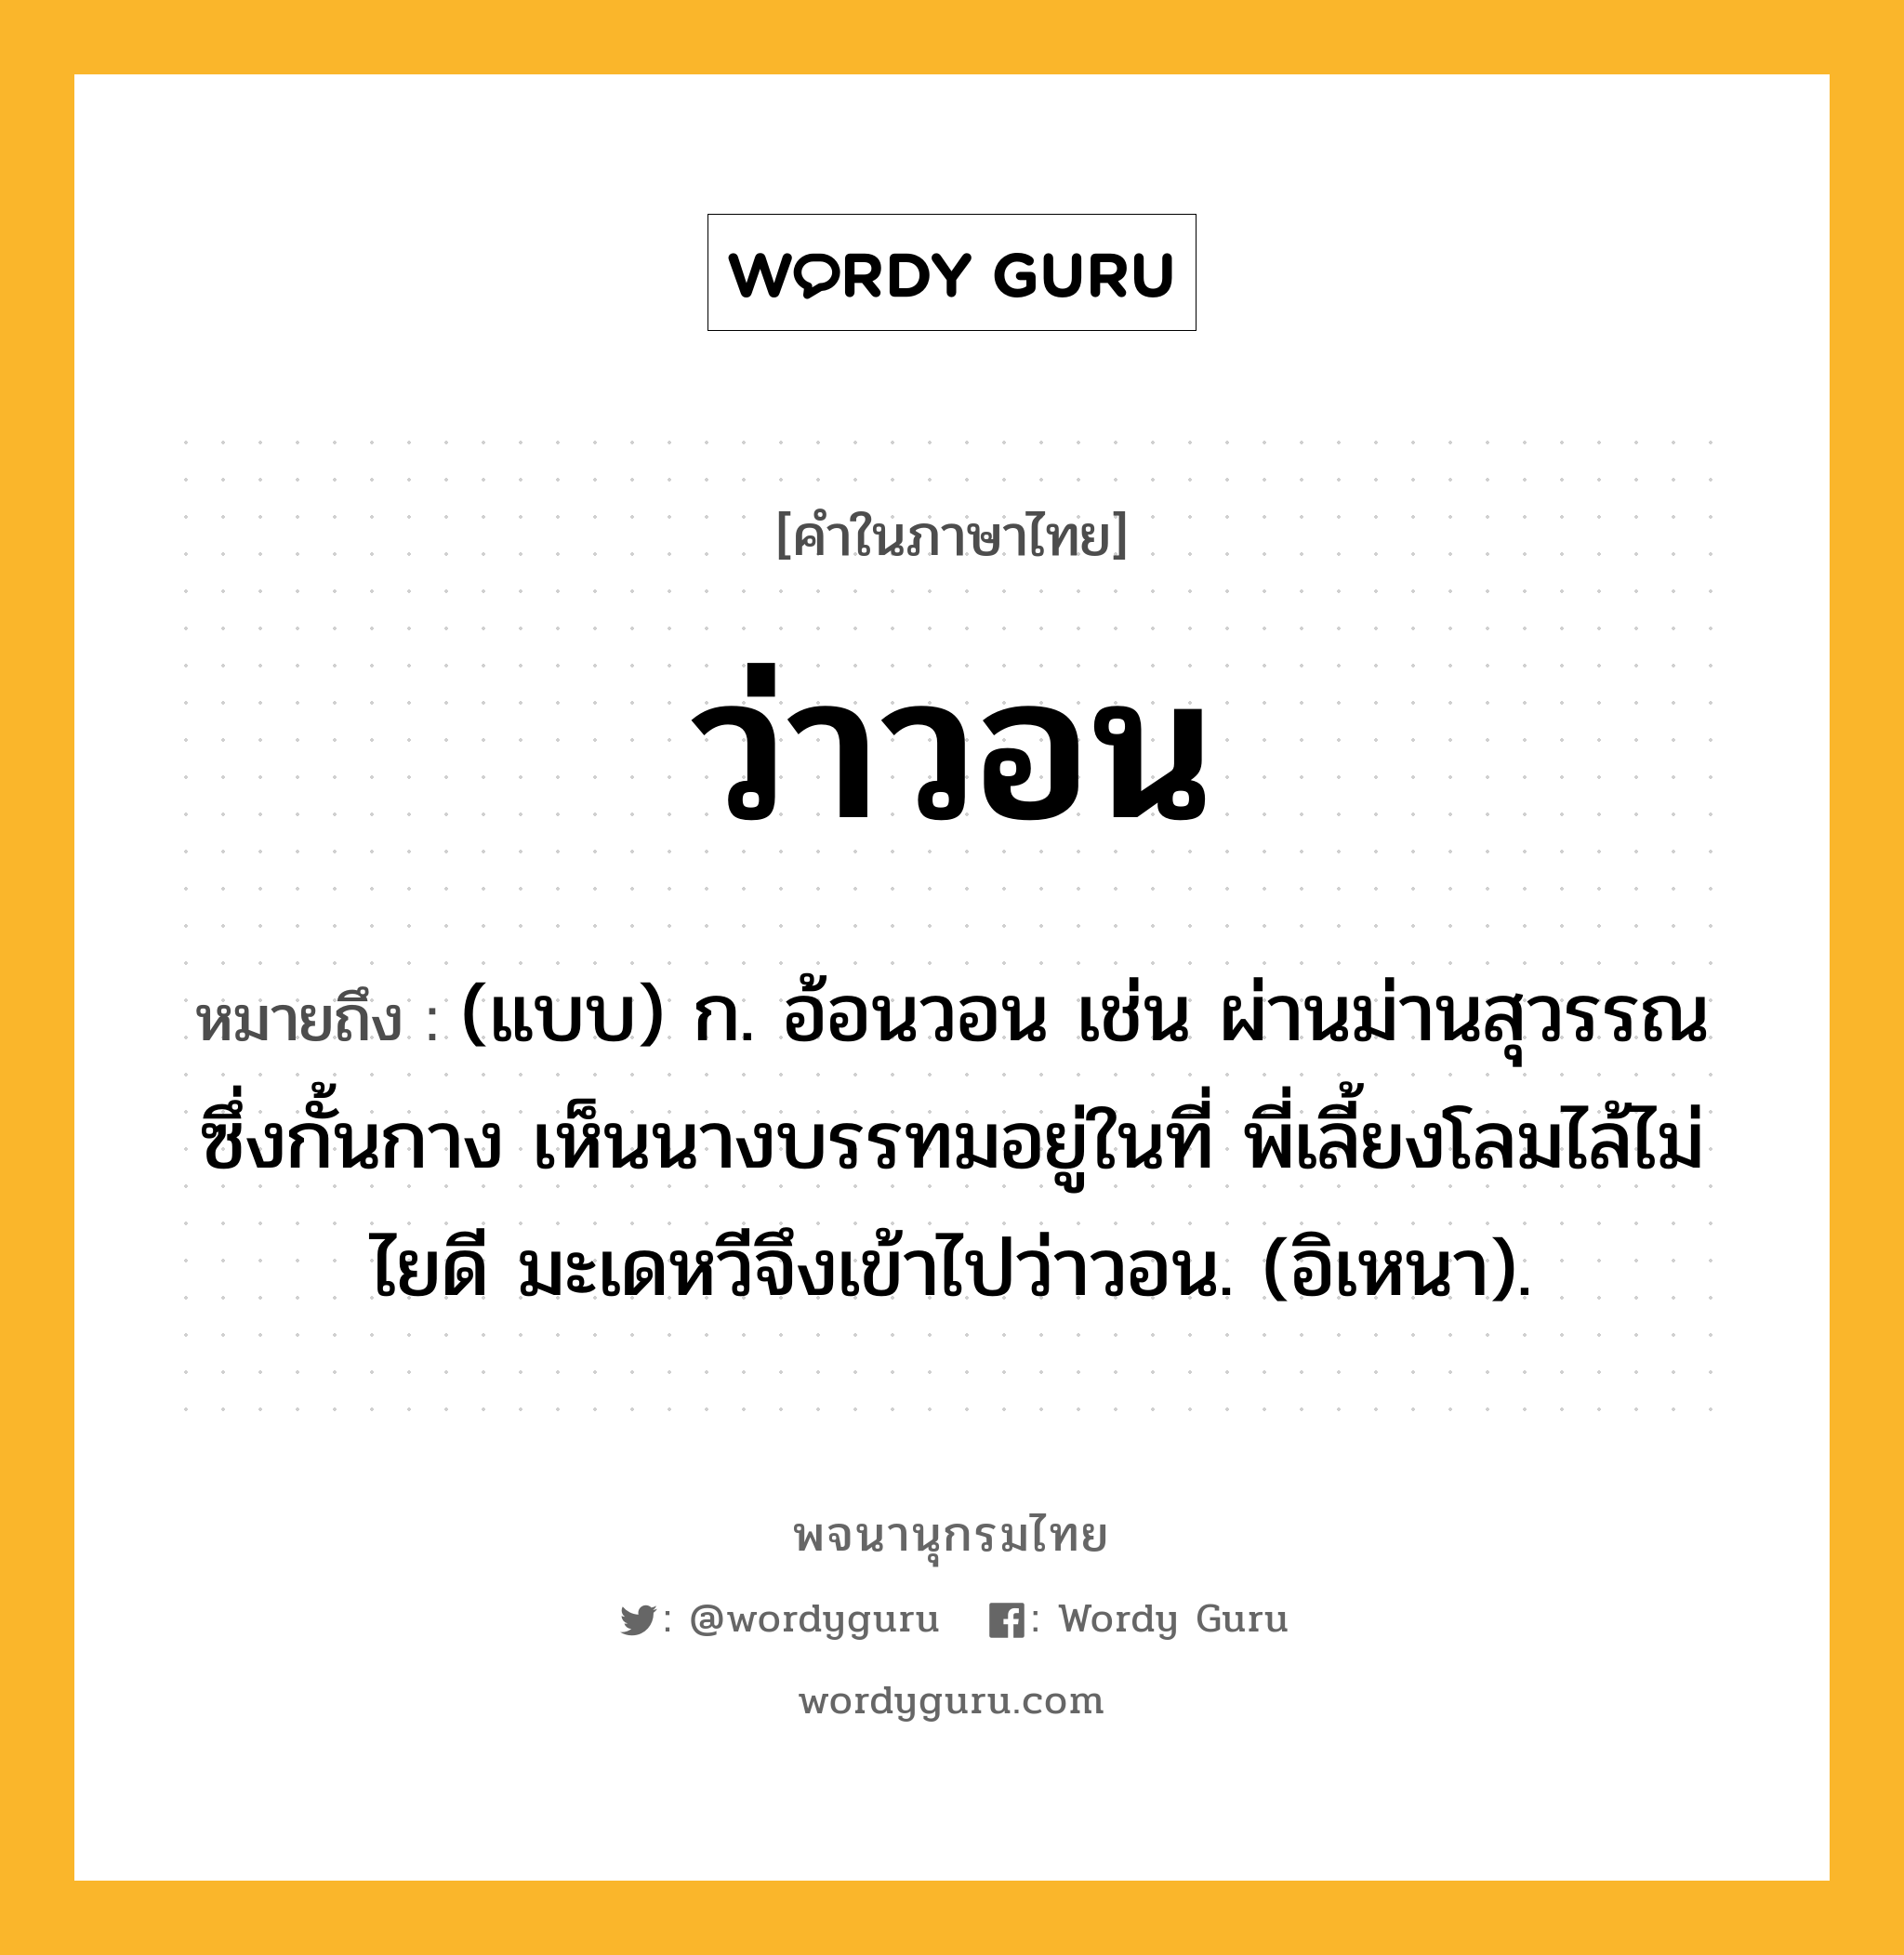 ว่าวอน ความหมาย หมายถึงอะไร?, คำในภาษาไทย ว่าวอน หมายถึง (แบบ) ก. อ้อนวอน เช่น ผ่านม่านสุวรรณซึ่งกั้นกาง เห็นนางบรรทมอยู่ในที่ พี่เลี้ยงโลมไล้ไม่ไยดี มะเดหวีจึงเข้าไปว่าวอน. (อิเหนา).